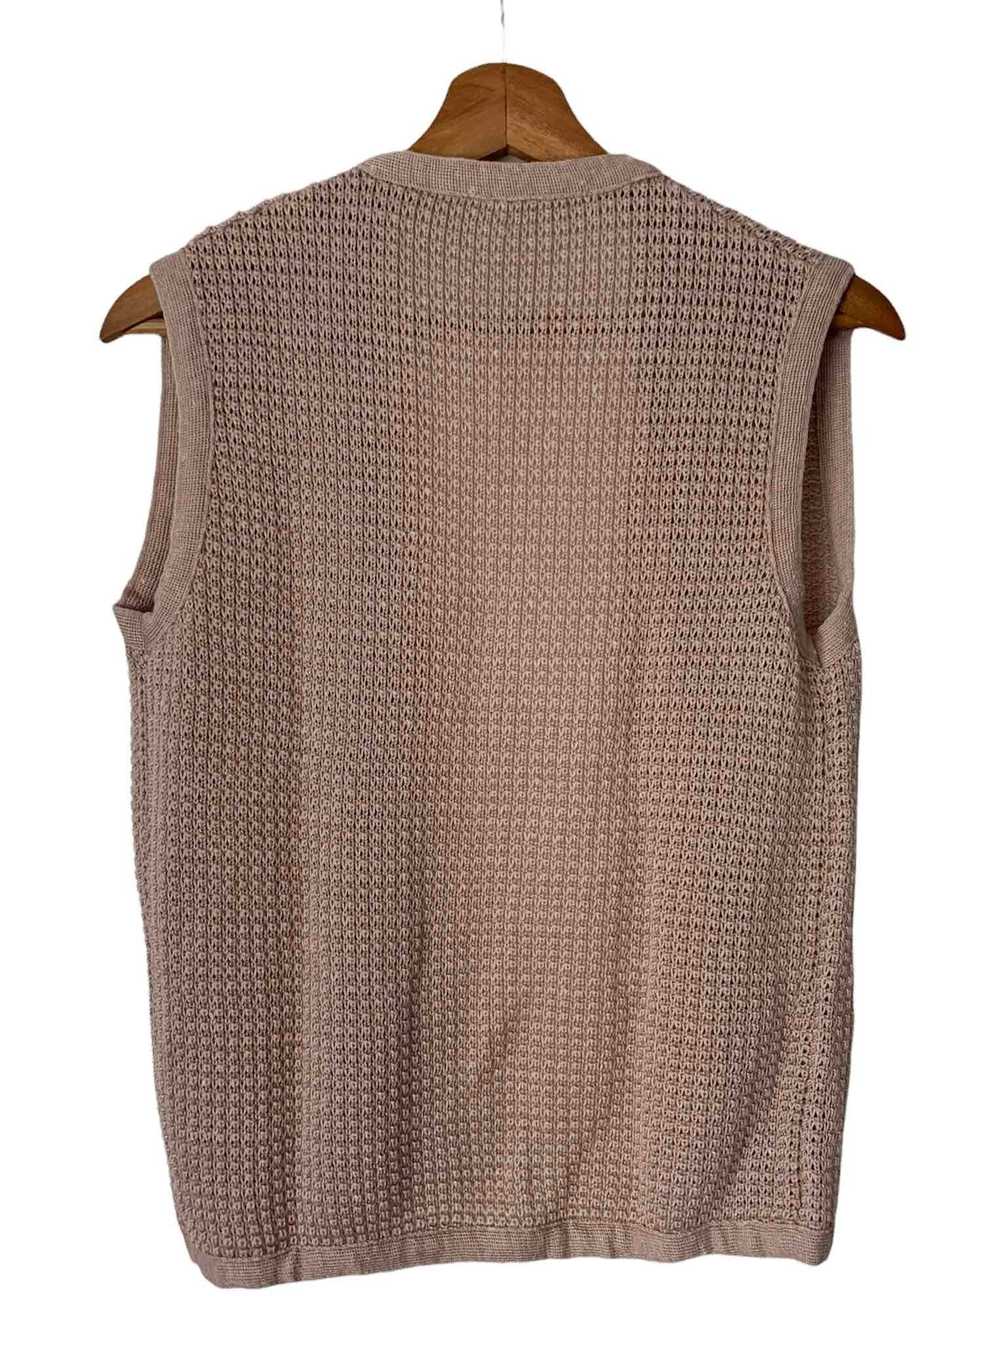 Knit vest - Sleeveless knit cardigan, open withou… - image 4